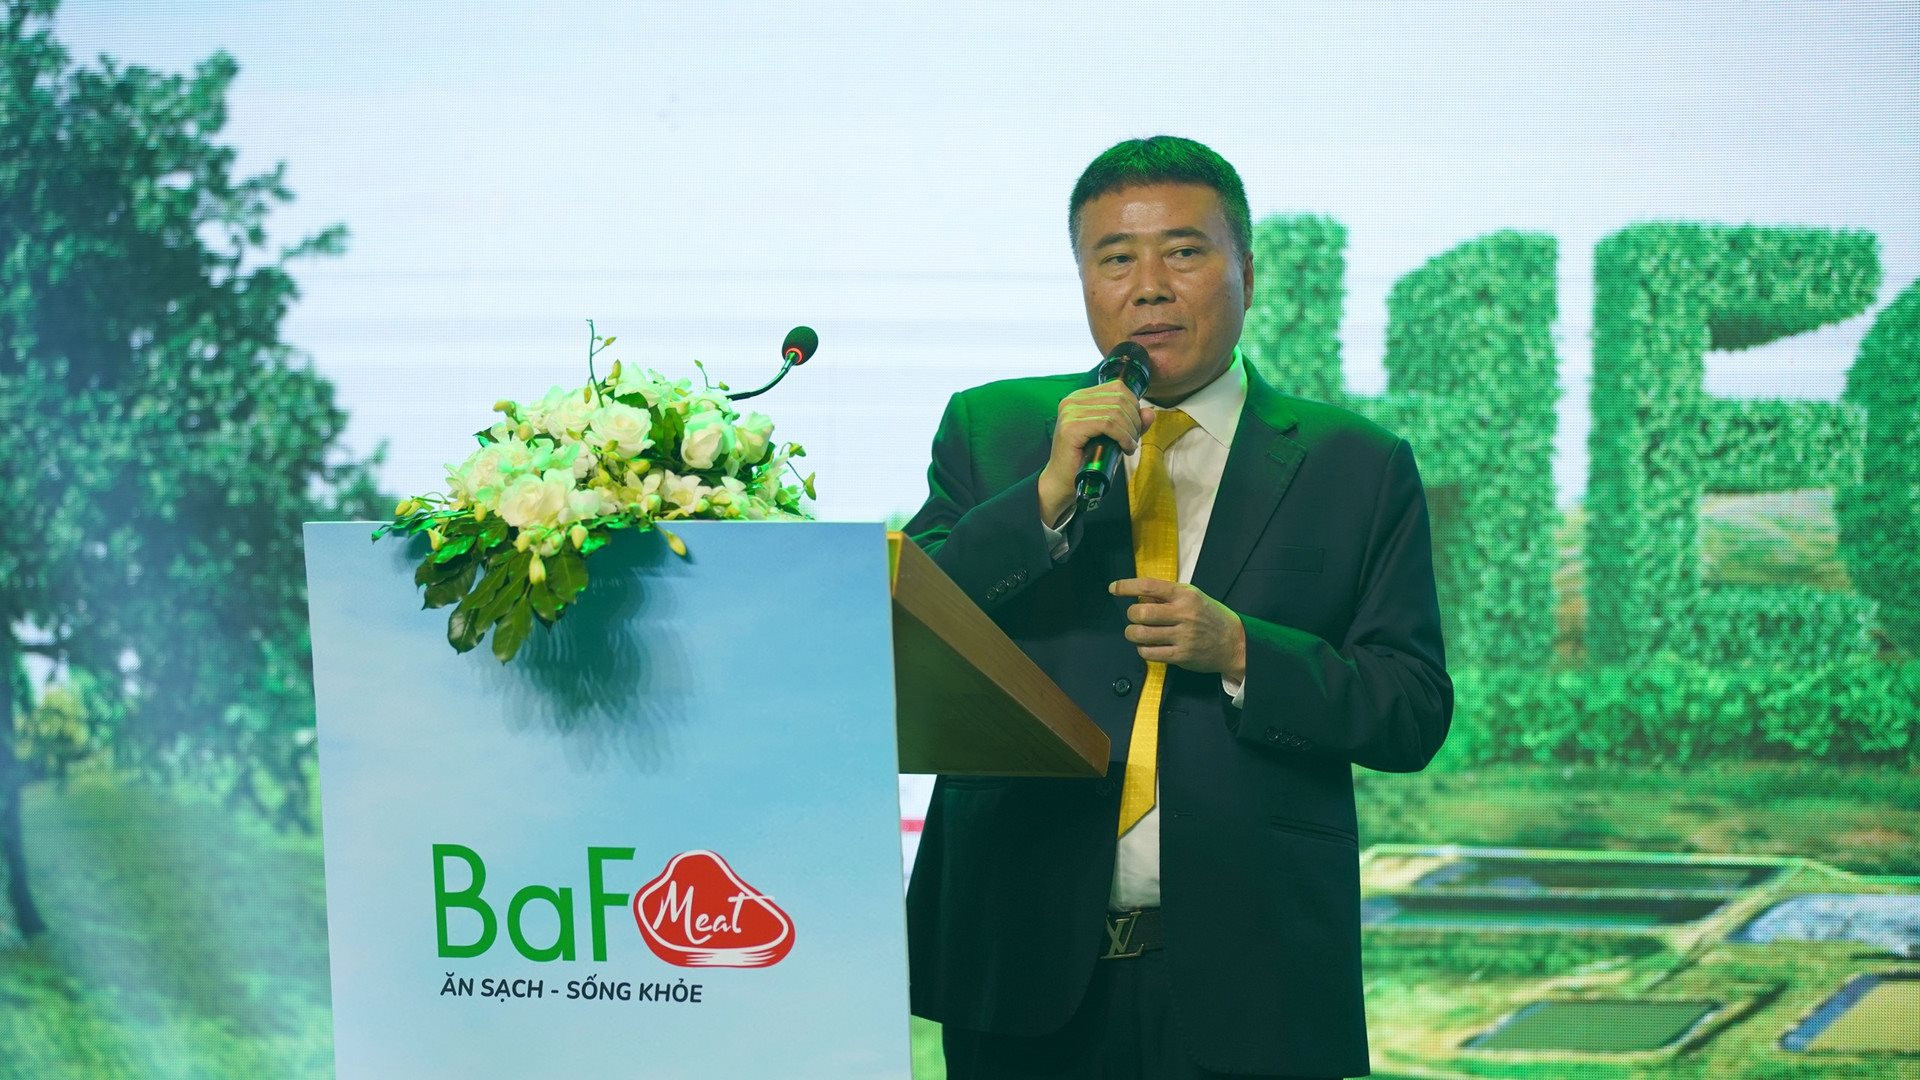 Đại gia Trương Sỹ Bá tự hào vì bảo vệ được đàn heo song lợi nhuận 6 tháng giảm 88%, lần đầu phát sinh doanh thu từ bất động sản - Ảnh 1.